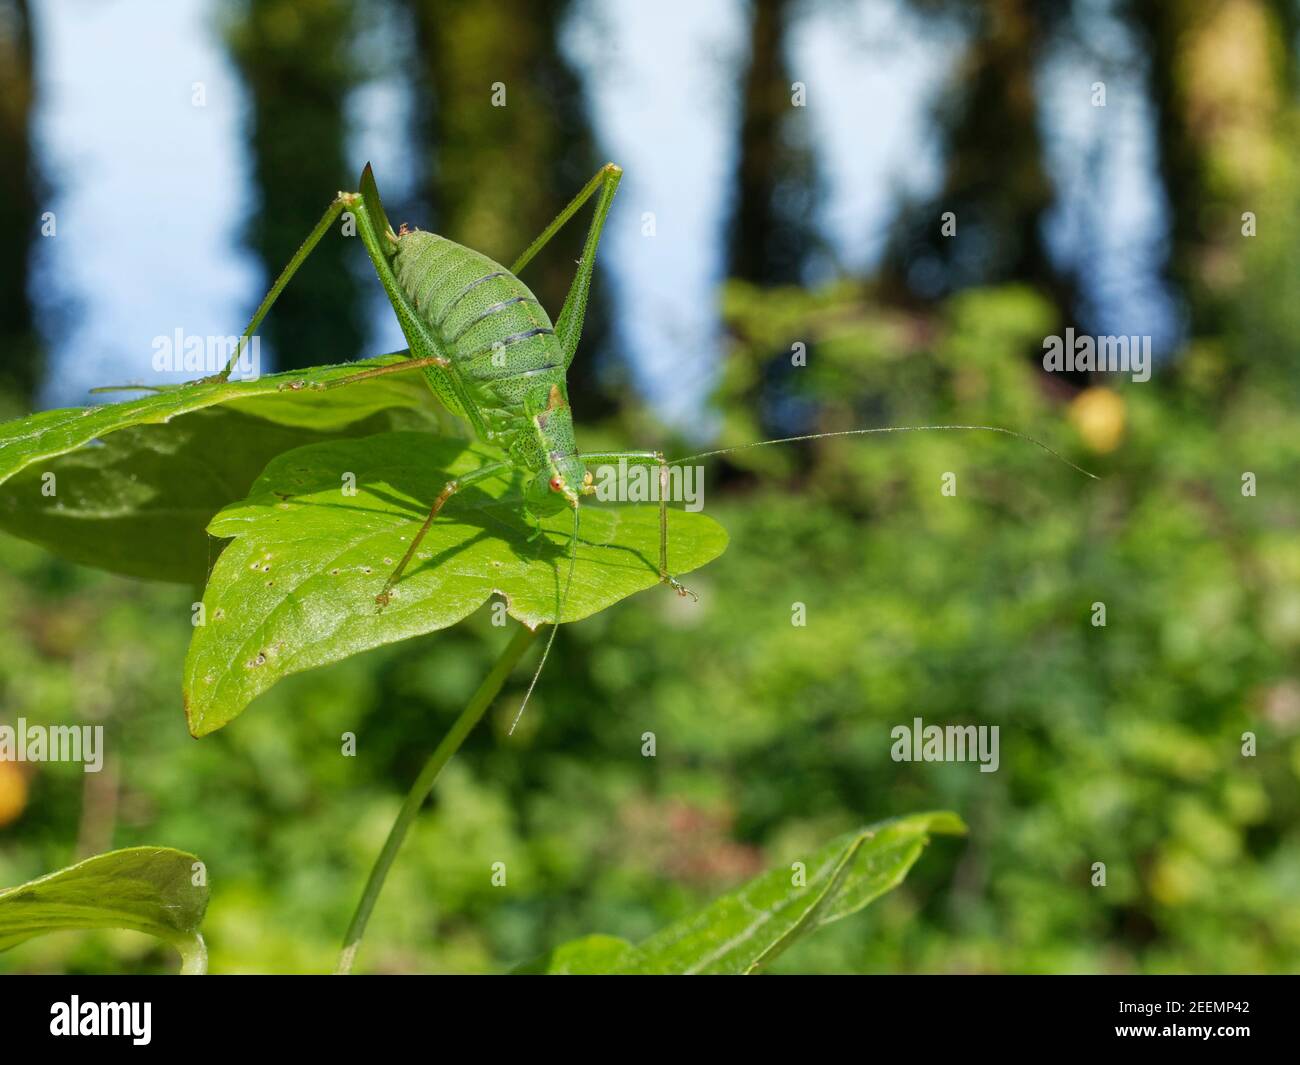 Criquet de brousse mouchetée (Leptophyes punctatissima) femelle bronzant sur une feuille sur un bord de forêt, The Gower, Glamourgan, pays de Galles, Royaume-Uni, septembre. Banque D'Images